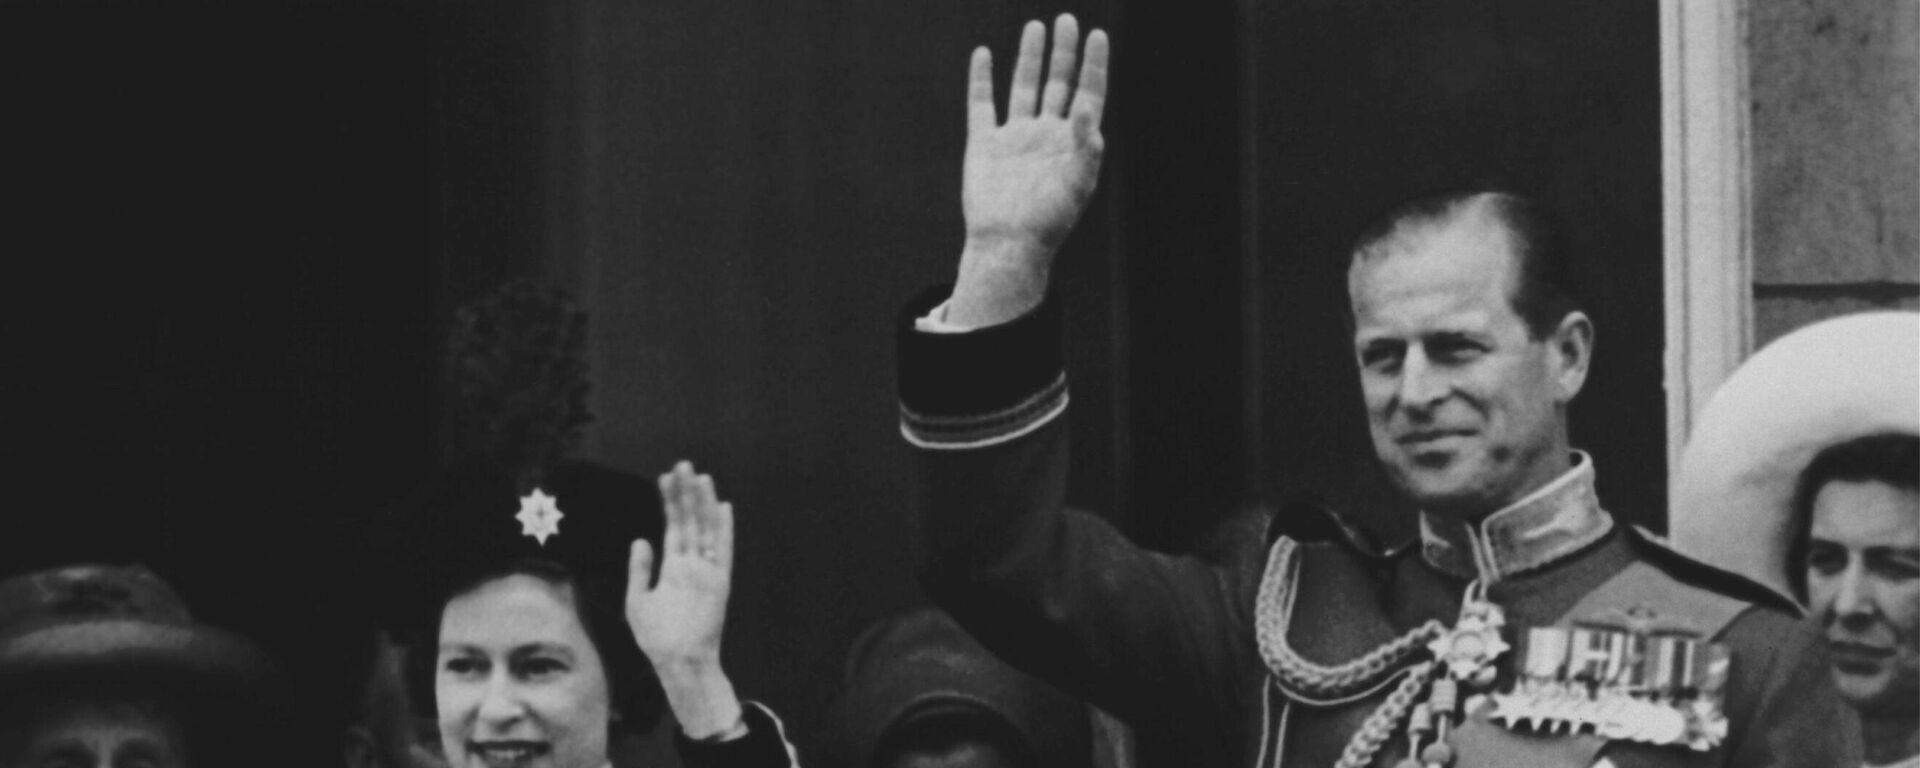 La reina Isabel II junto al príncipe Felipe de Edimburgo en 1964 - Sputnik Mundo, 1920, 09.04.2021